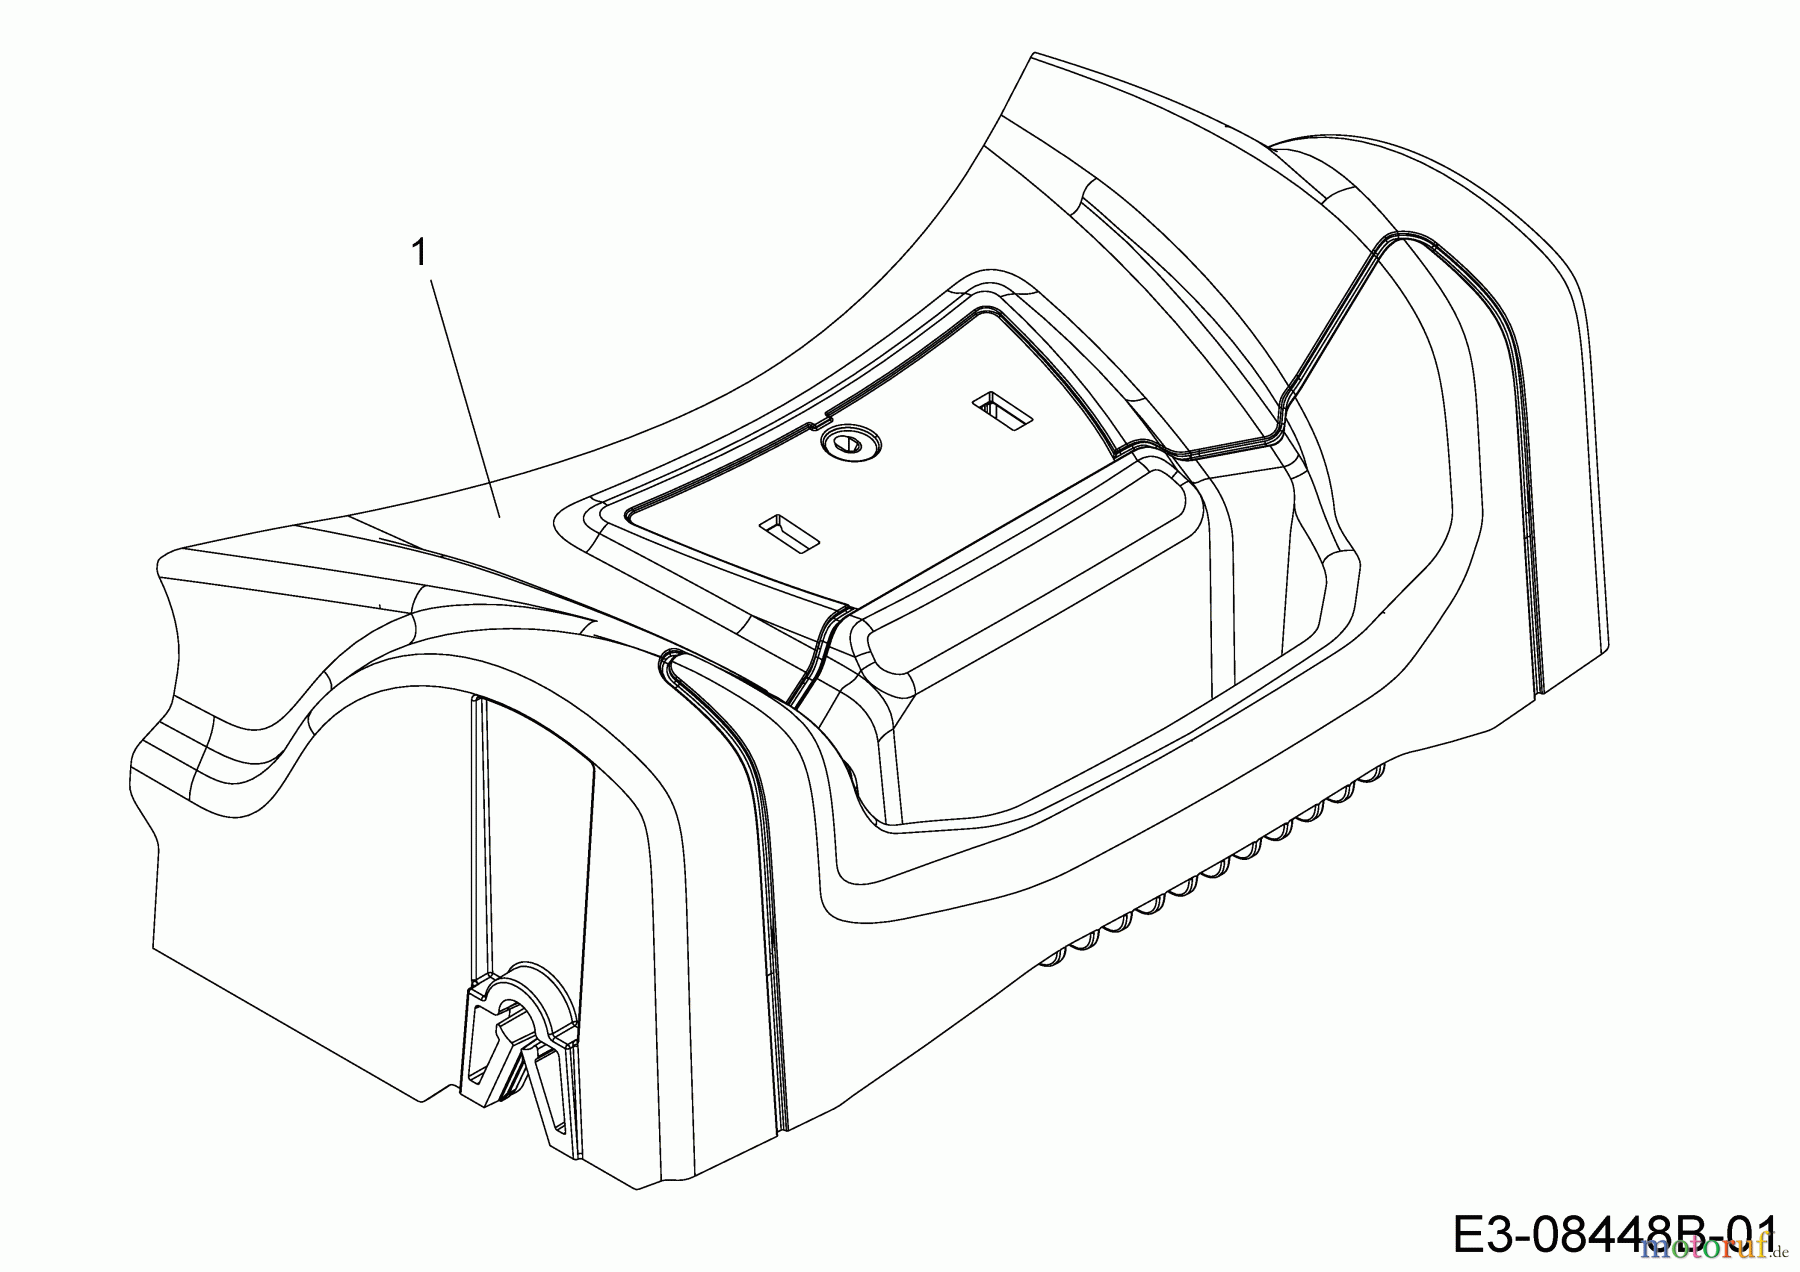  Motorpedo Motormäher mit Antrieb MPG 46 12C-TMCQ691  (2018) Abdeckung Vorderachse